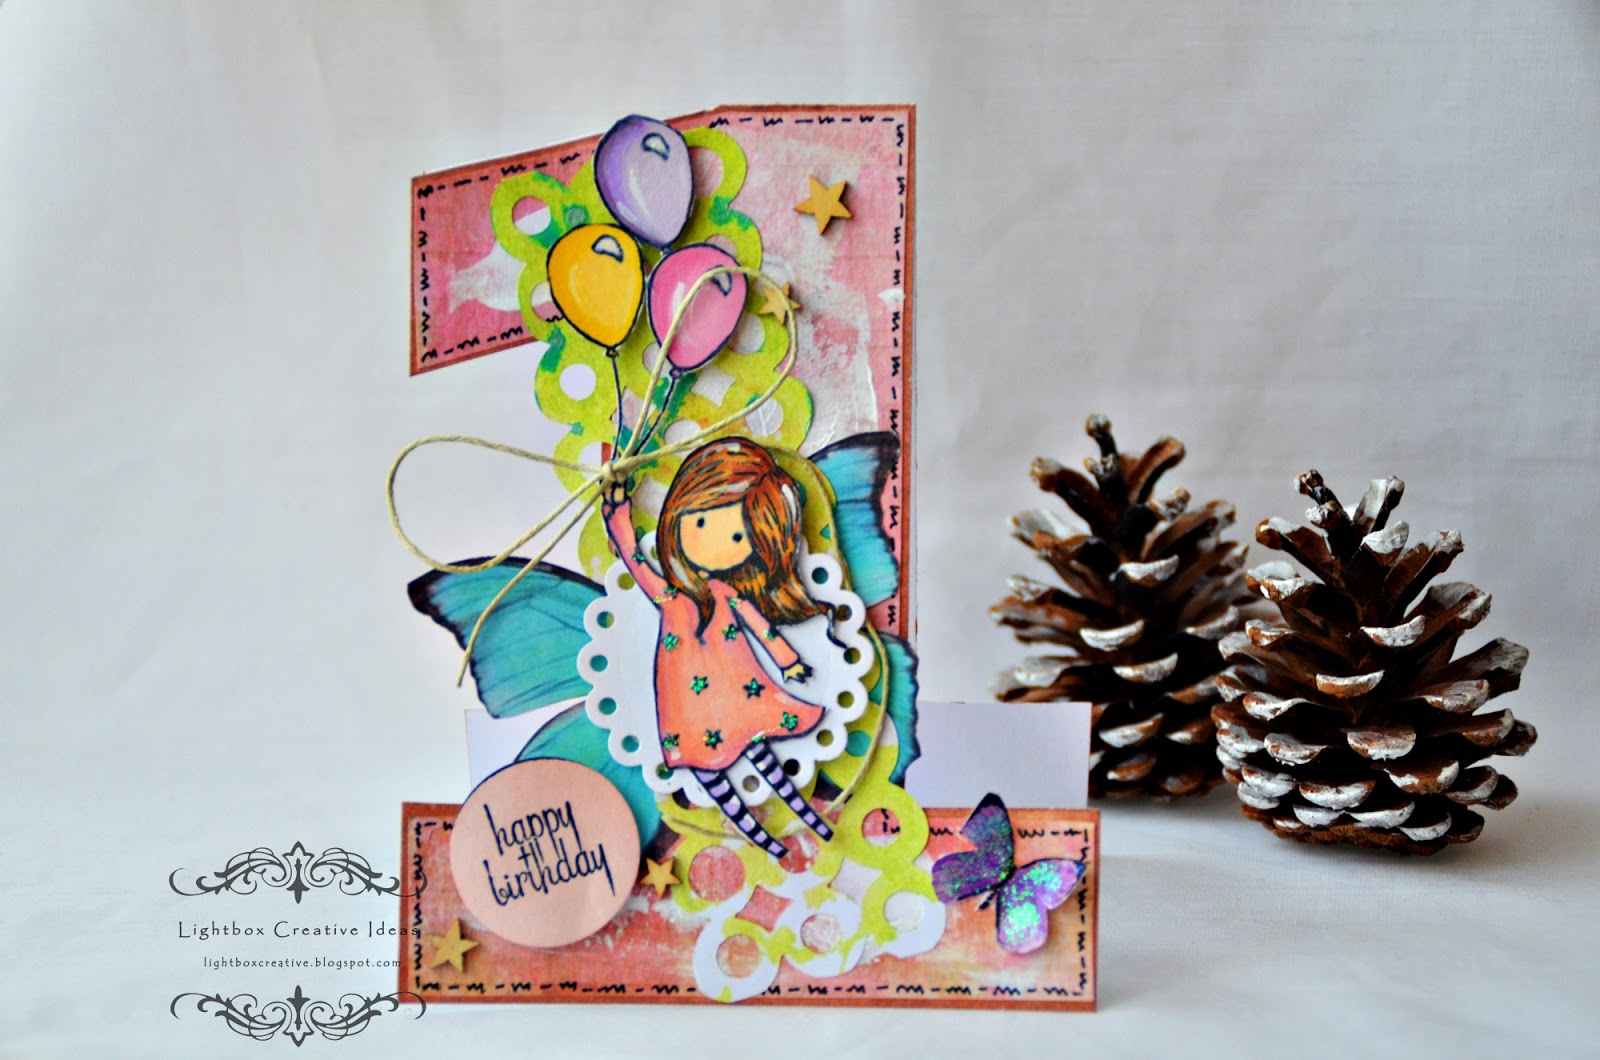 Creative Ideas For A Birthday Card Lightbox Creative Ideas 1st Birthday Ba Girl Card